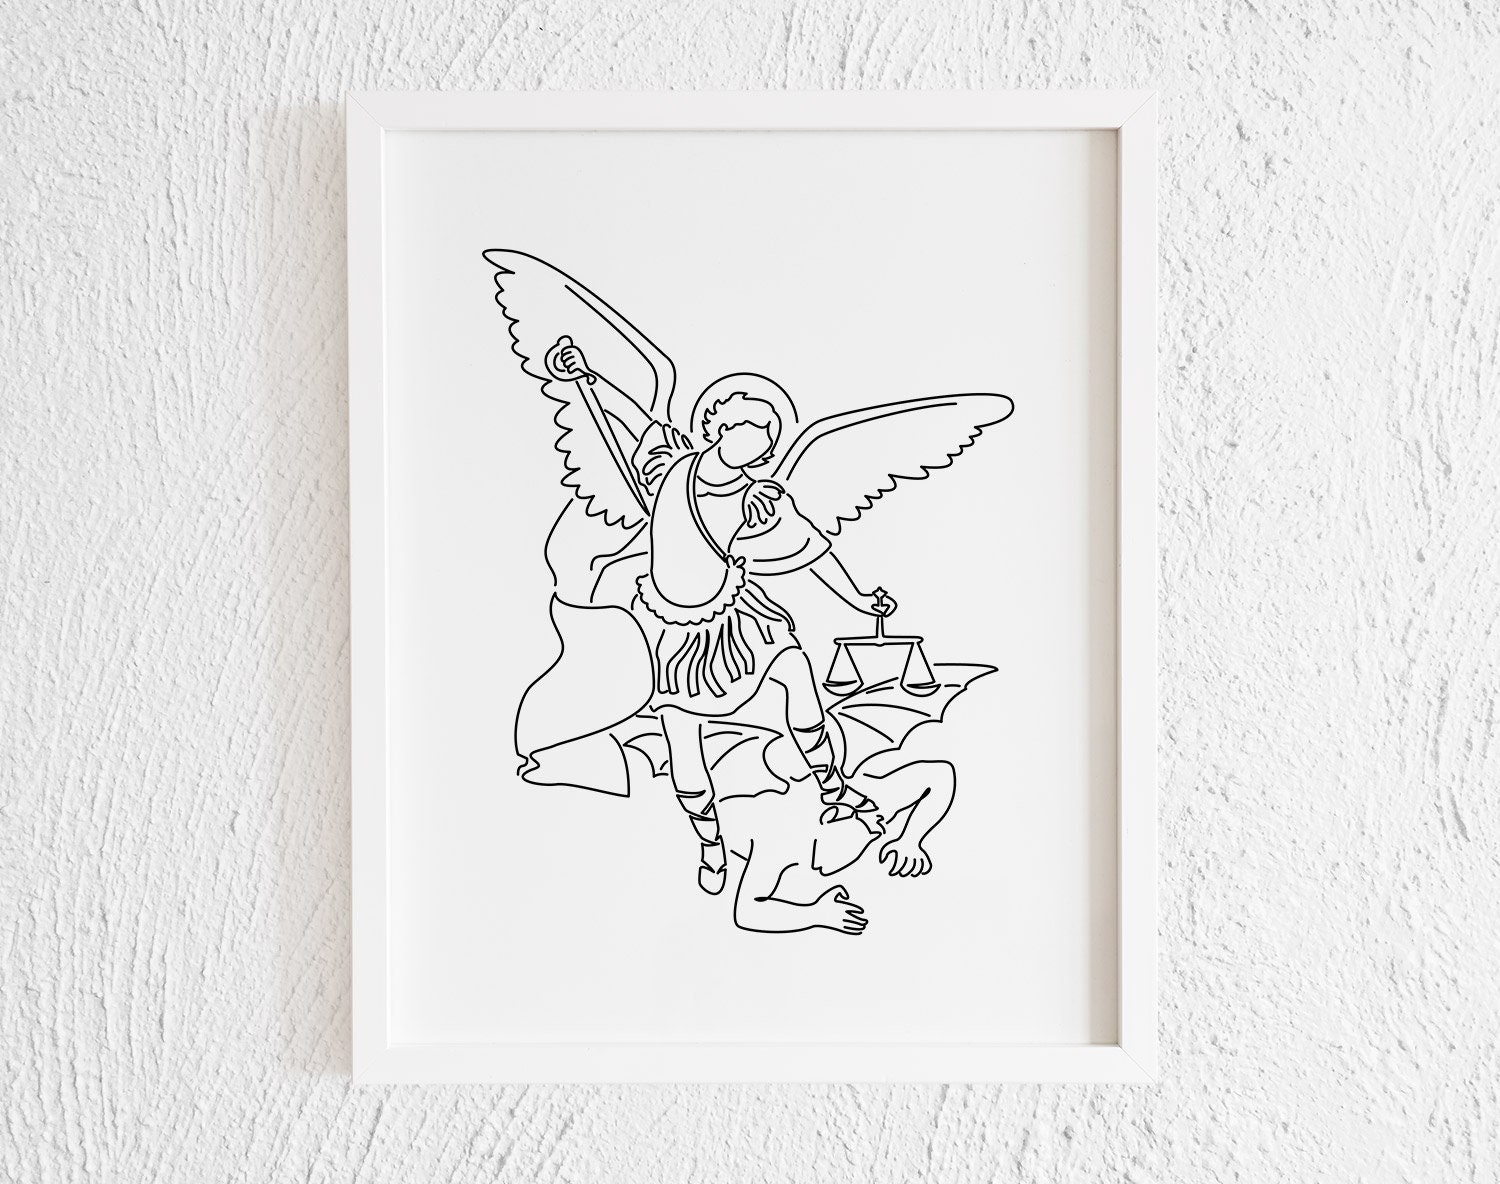 Archangel Michael Doodle Print